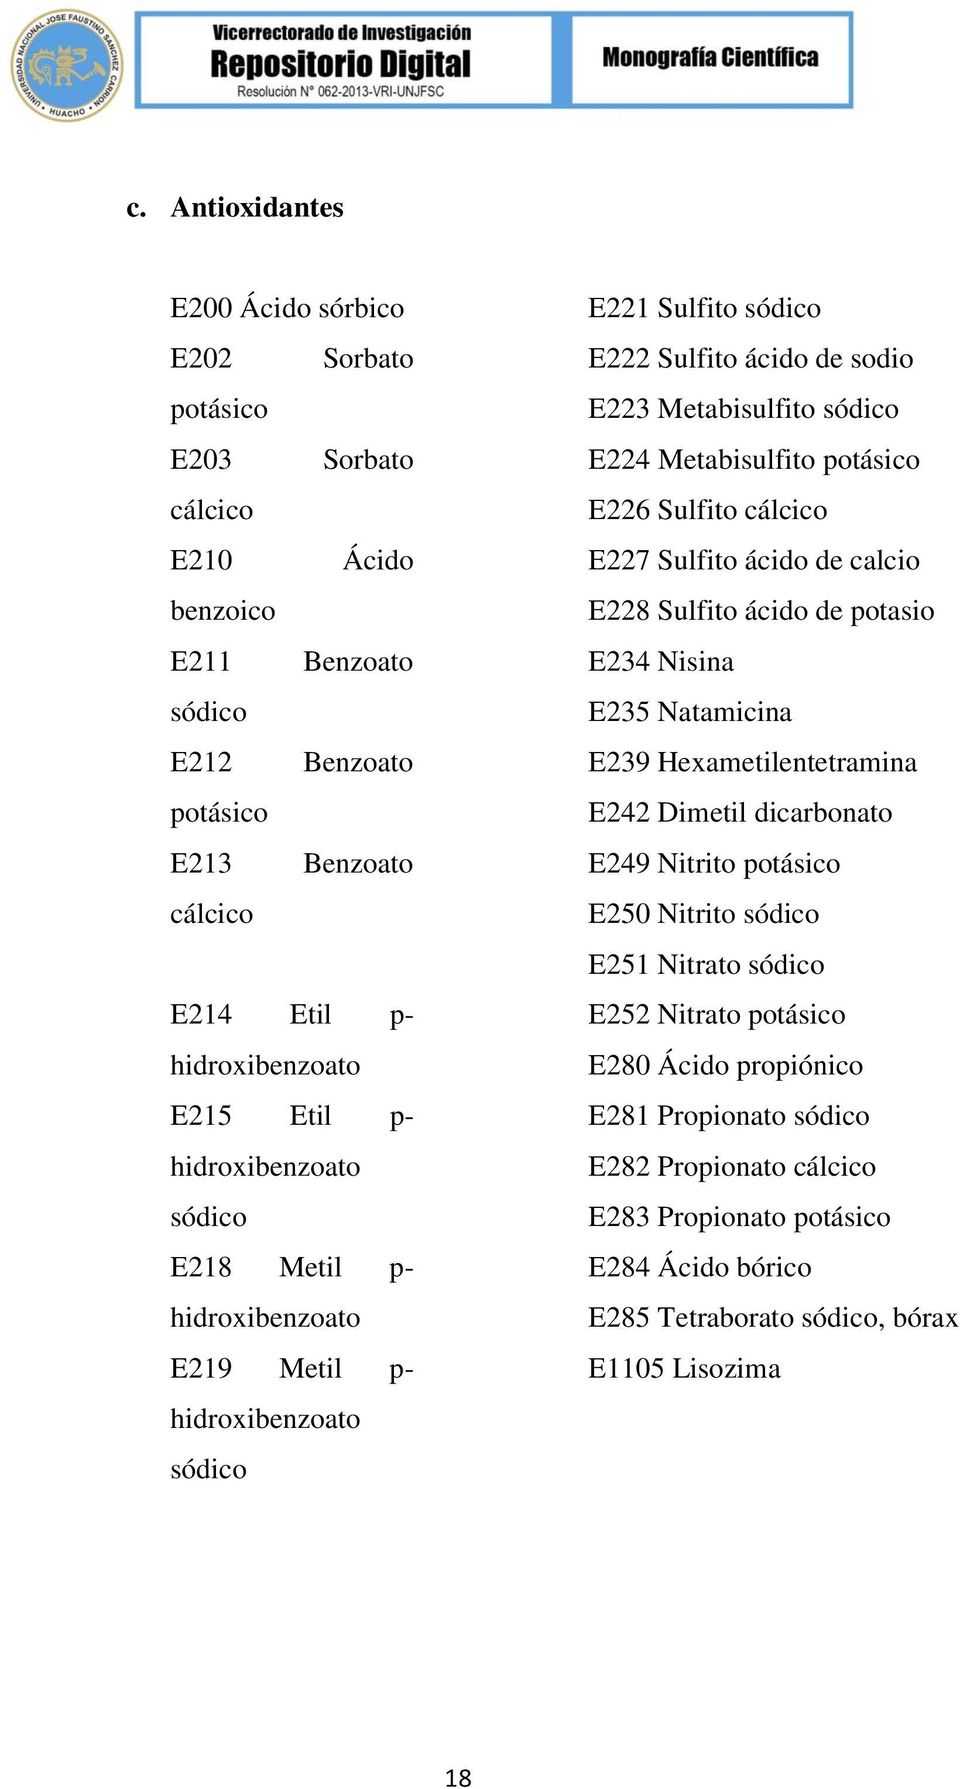 E226 Sulfito cálcico E227 Sulfito ácido de calcio E228 Sulfito ácido de potasio E234 Nisina E235 Natamicina E239 Hexametilentetramina E242 Dimetil dicarbonato E249 Nitrito potásico E250 Nitrito